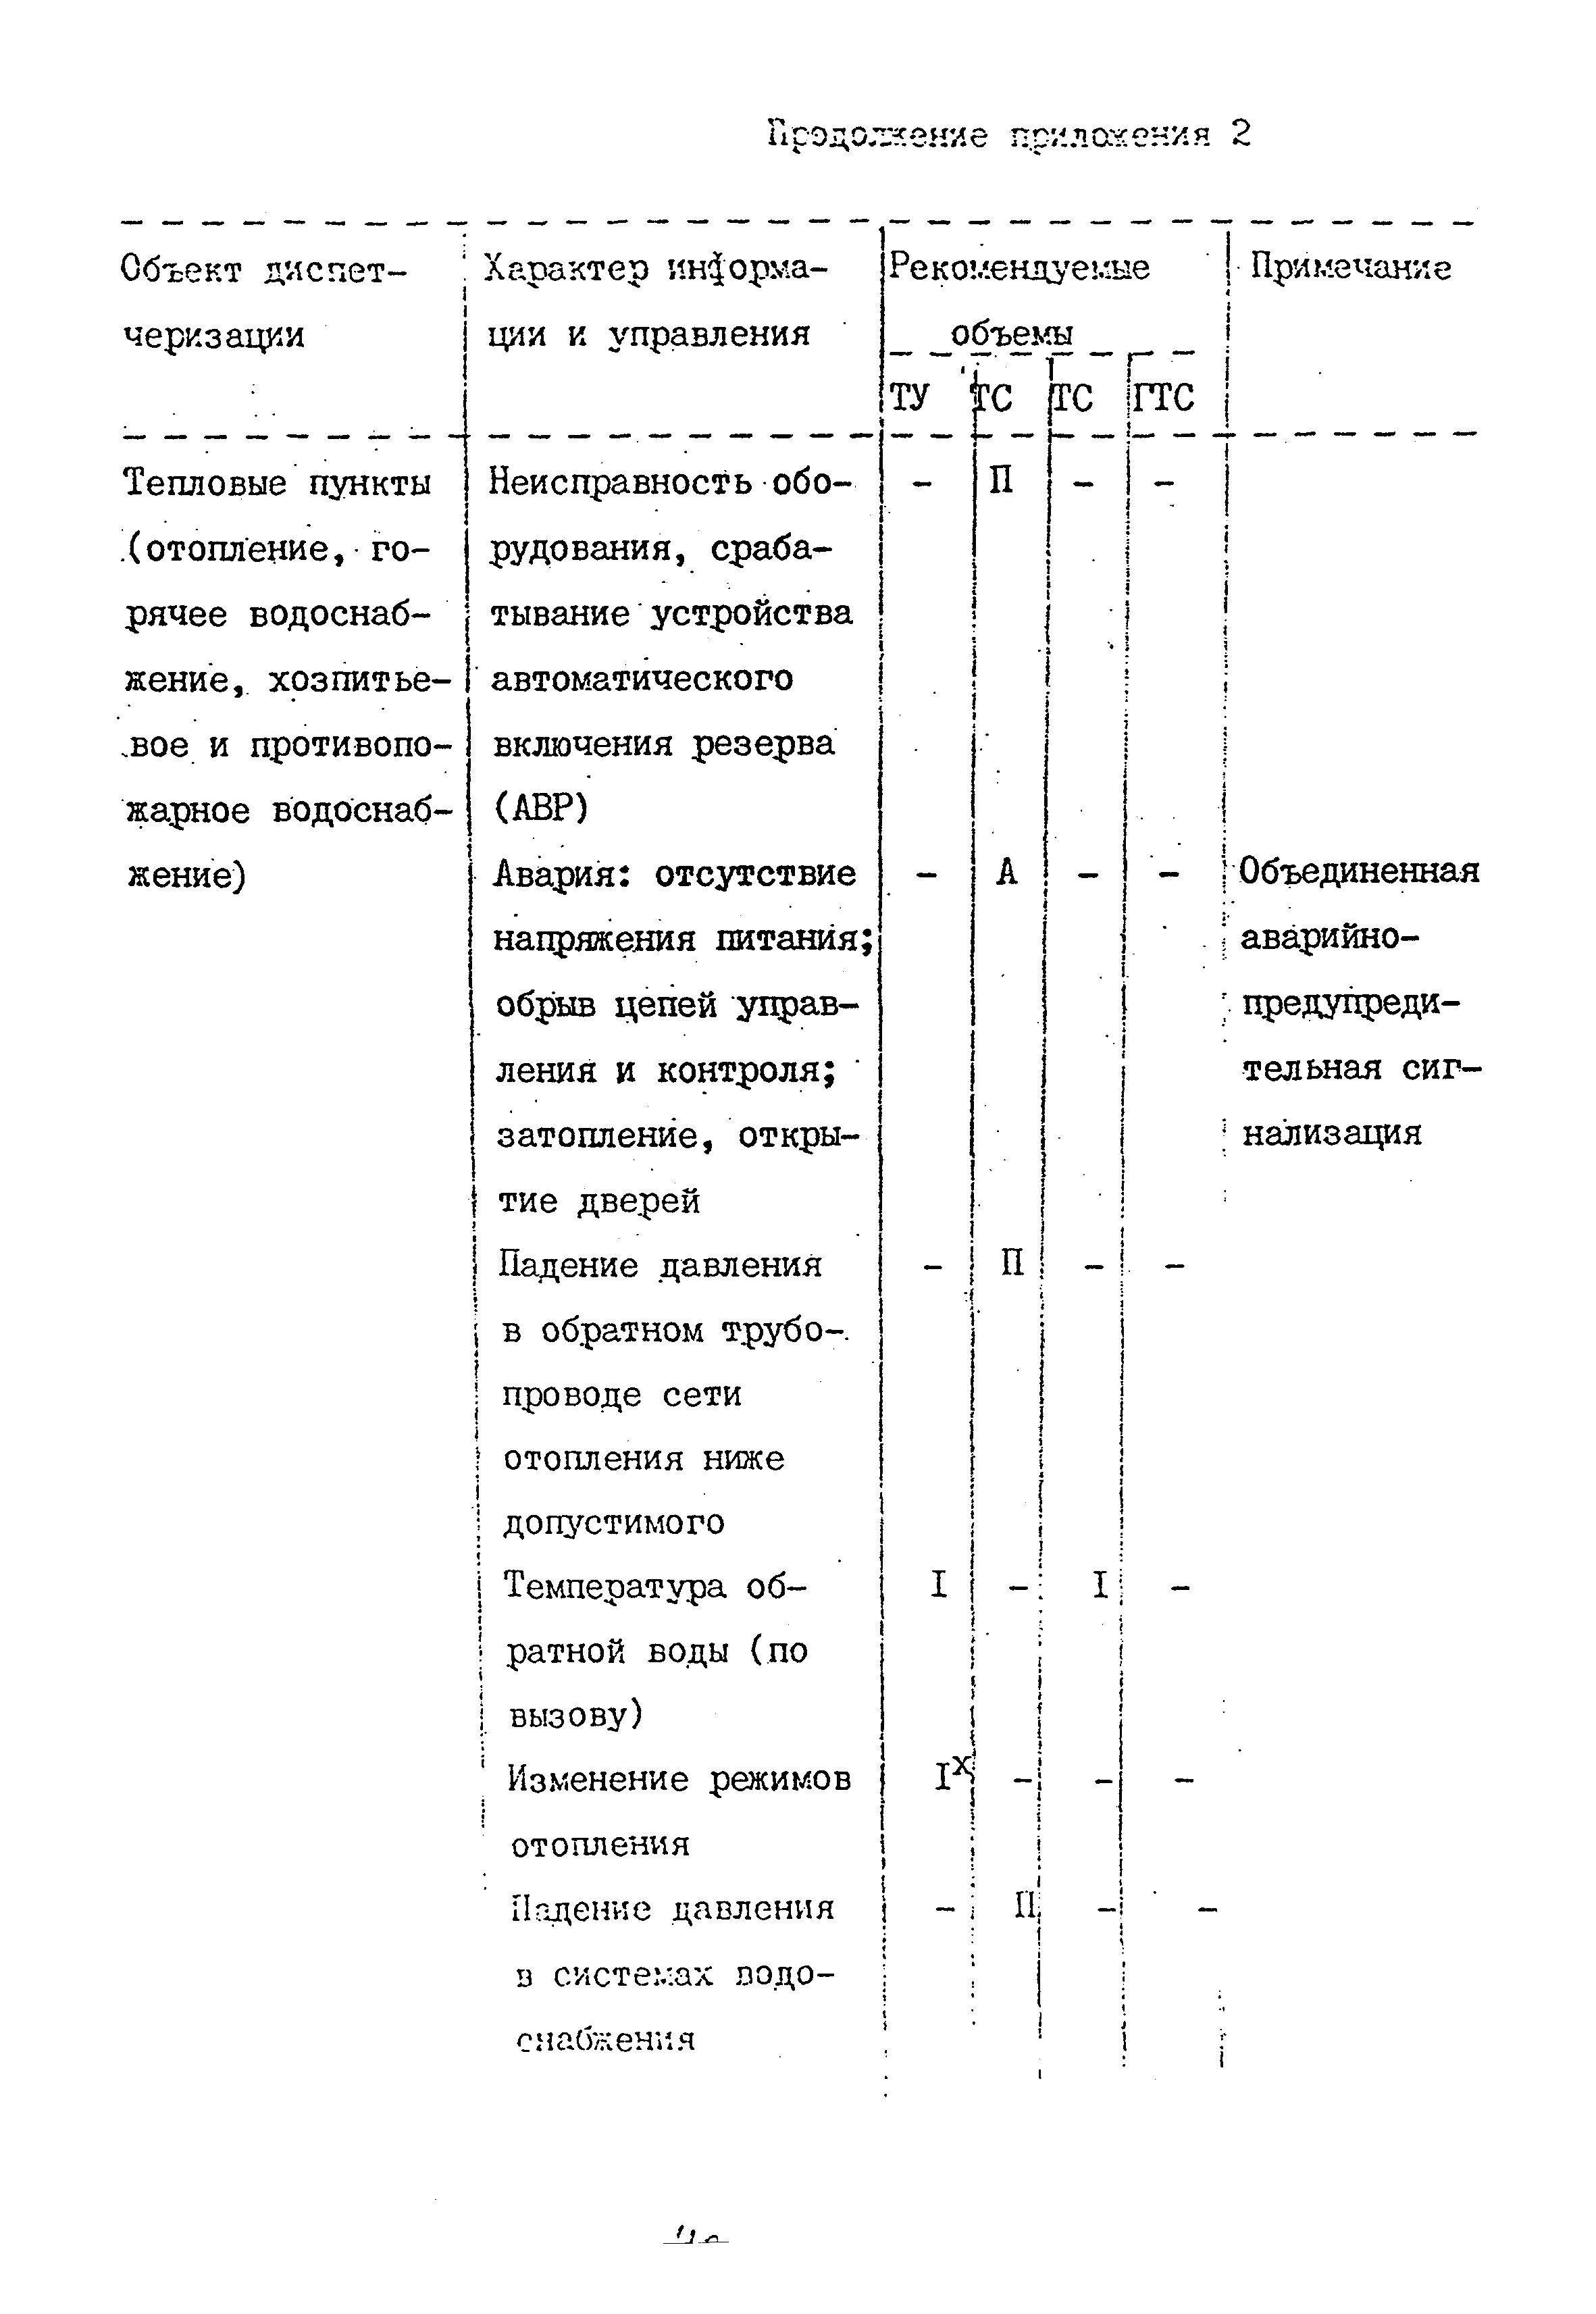 ВСН 60-89